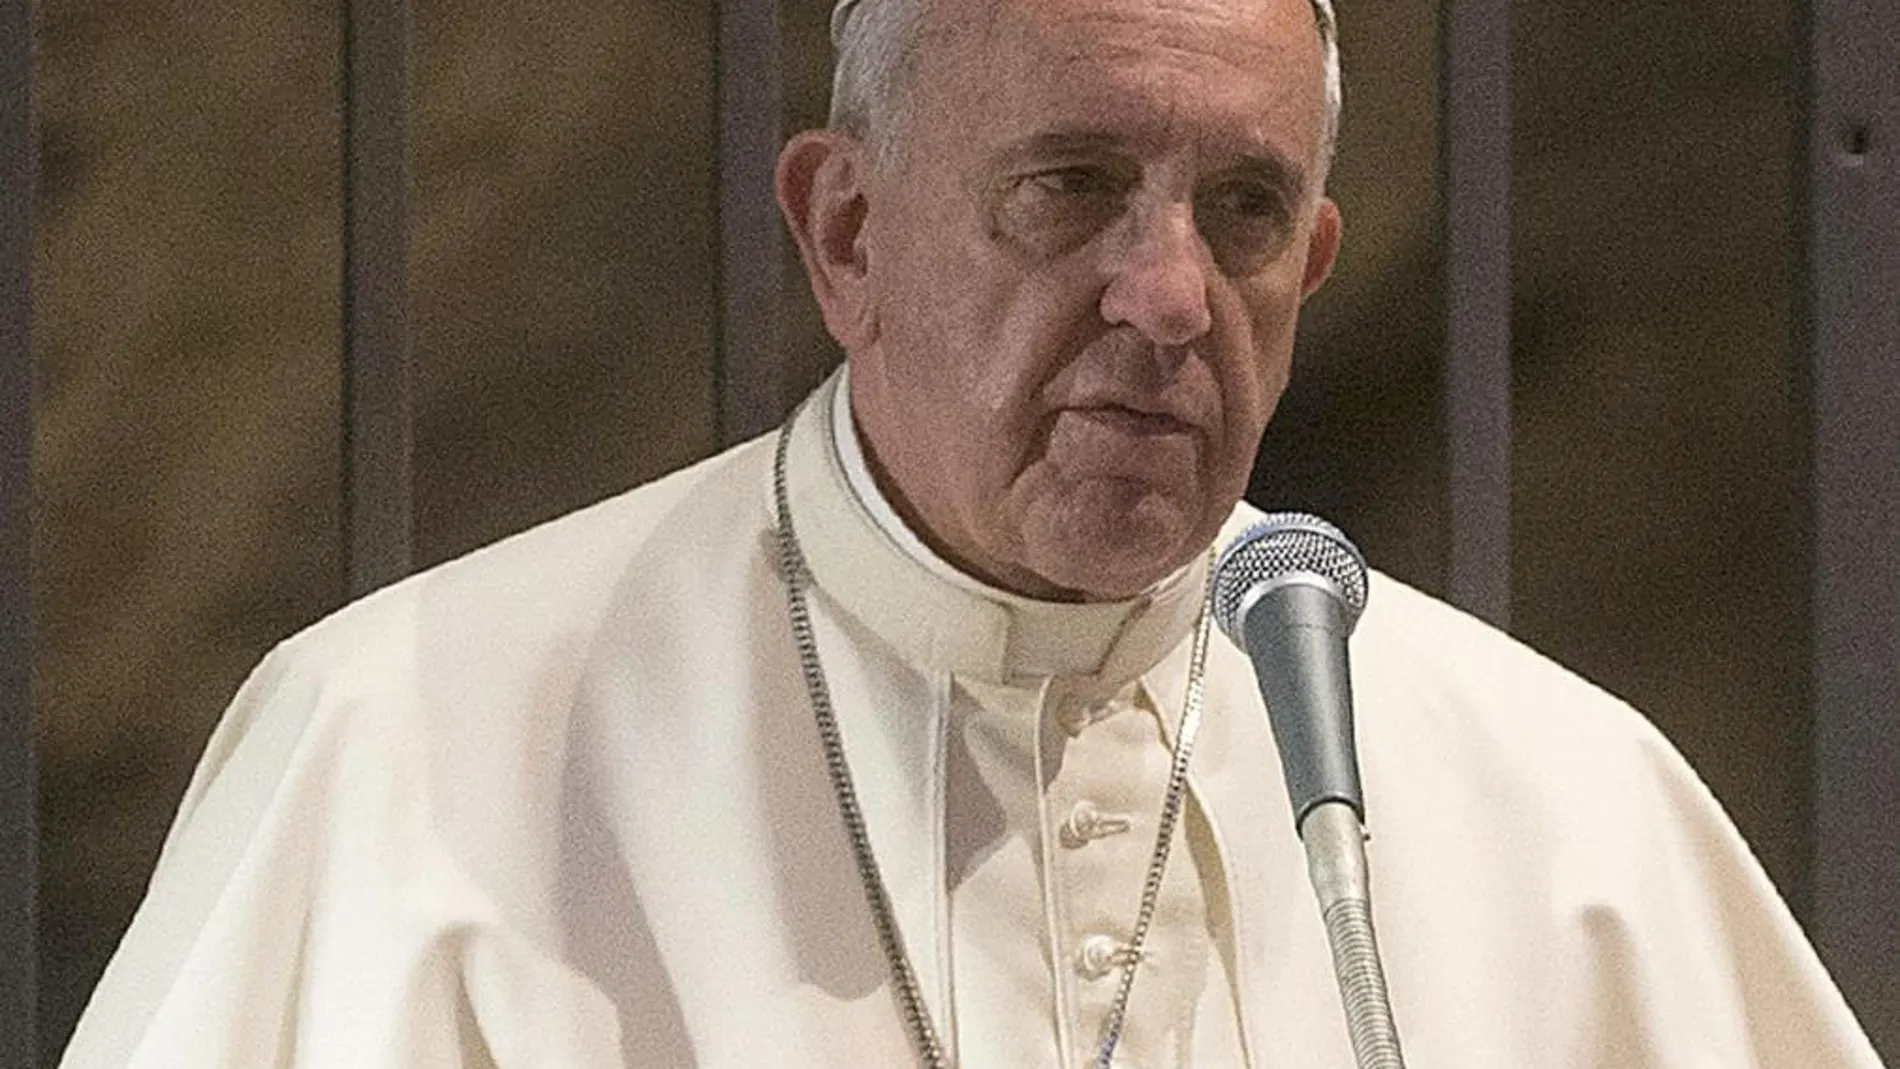 El Papa pide a los carismáticos que no controlen a Dios